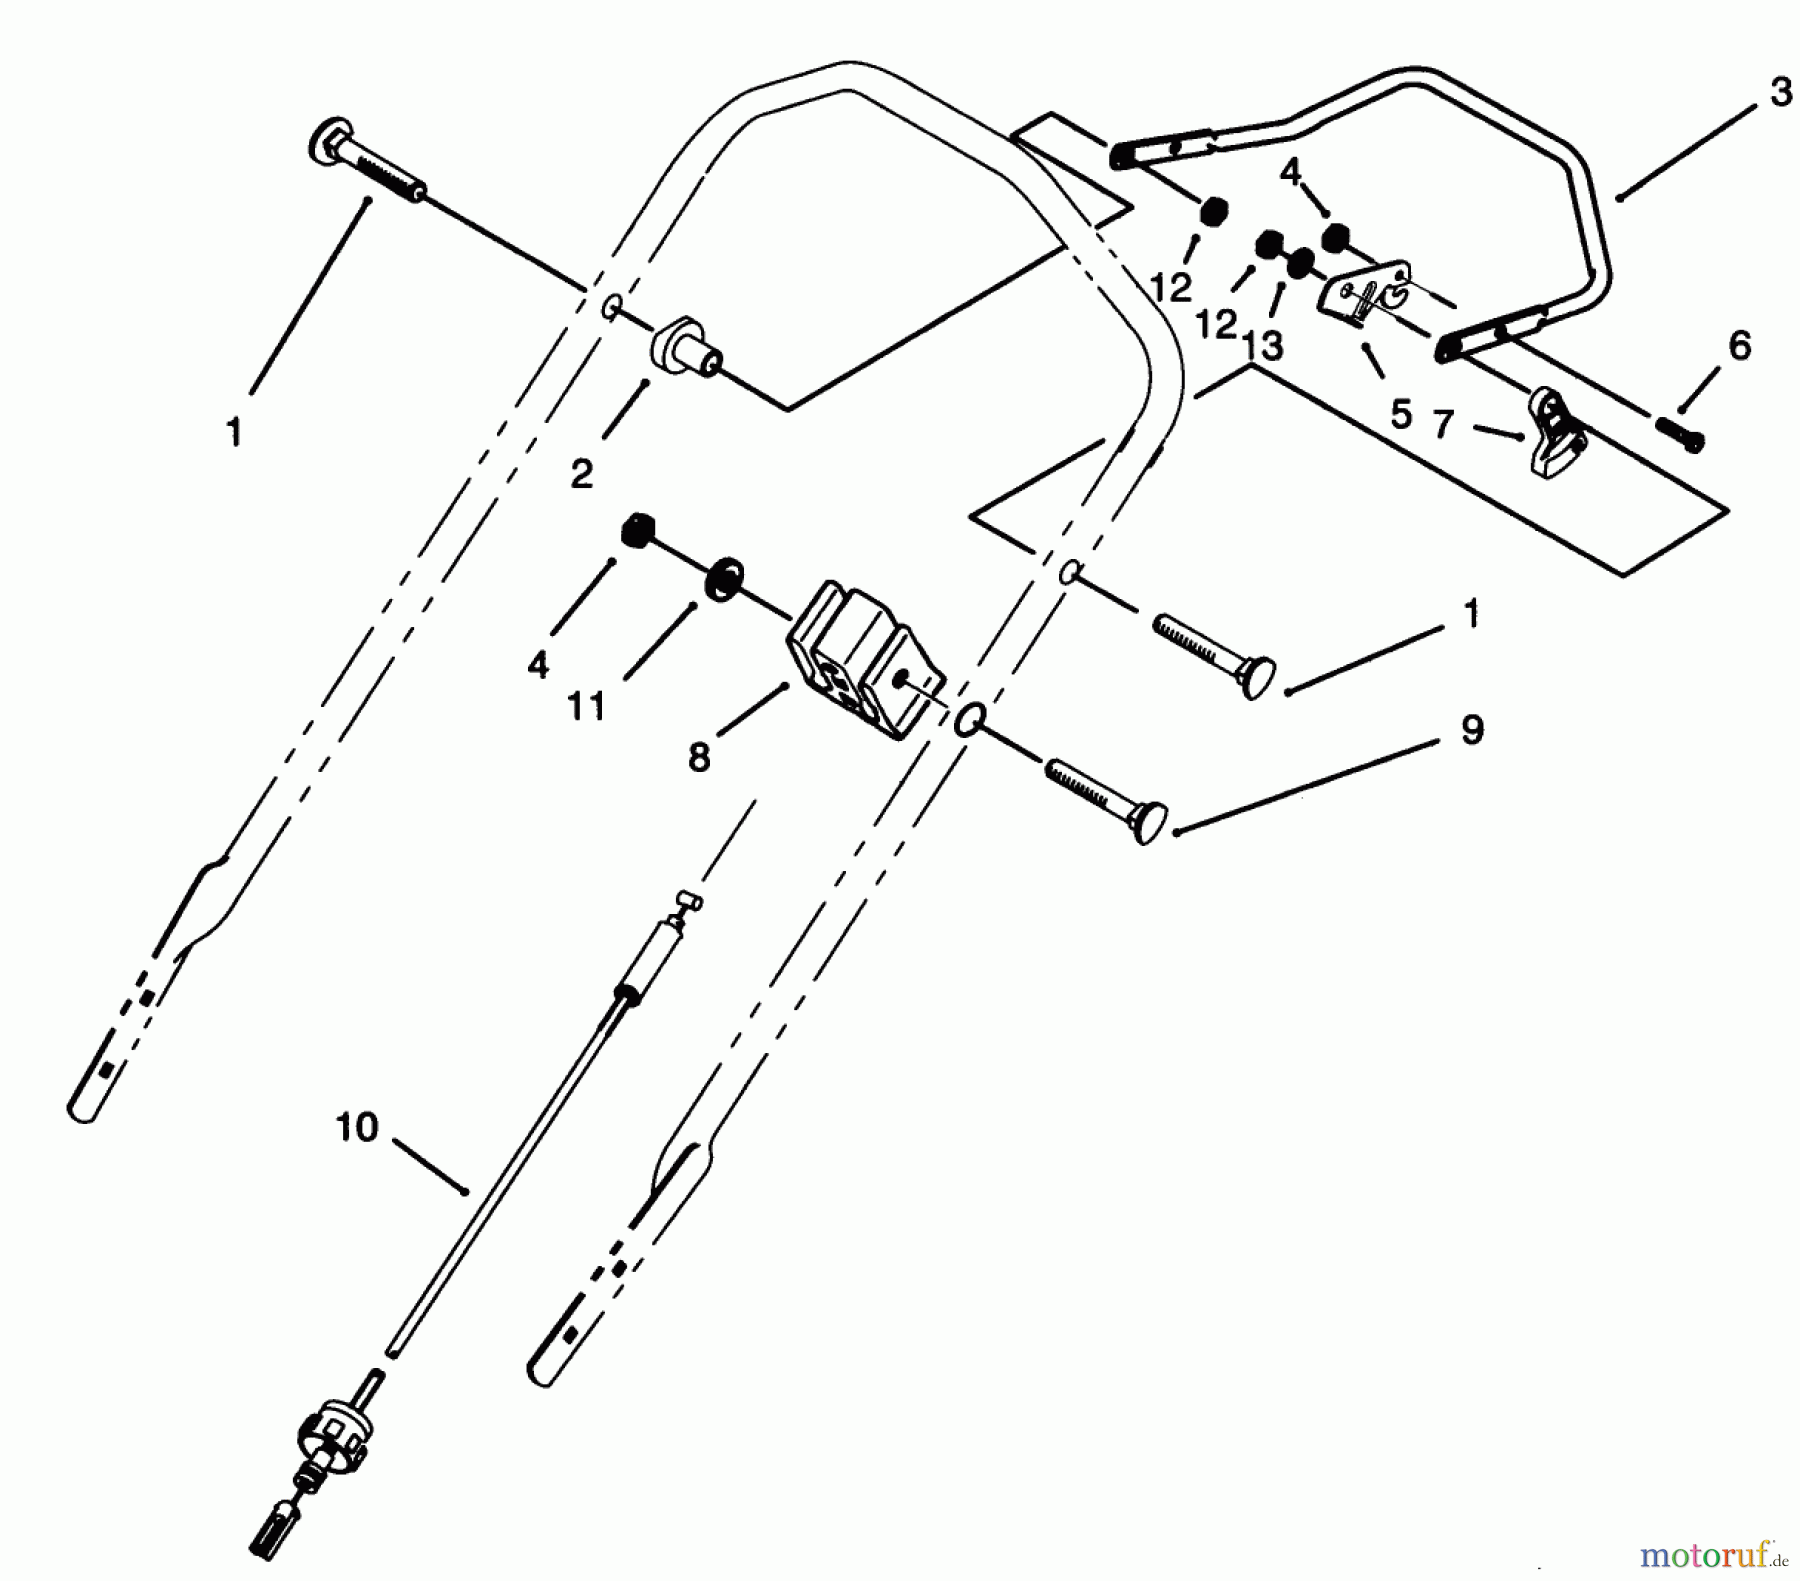  Toro Neu Mowers, Walk-Behind Seite 2 26635BG - Toro Lawnmower, 1993 (3900001-3999999) TRACTION CONTROL ASSEMBLY